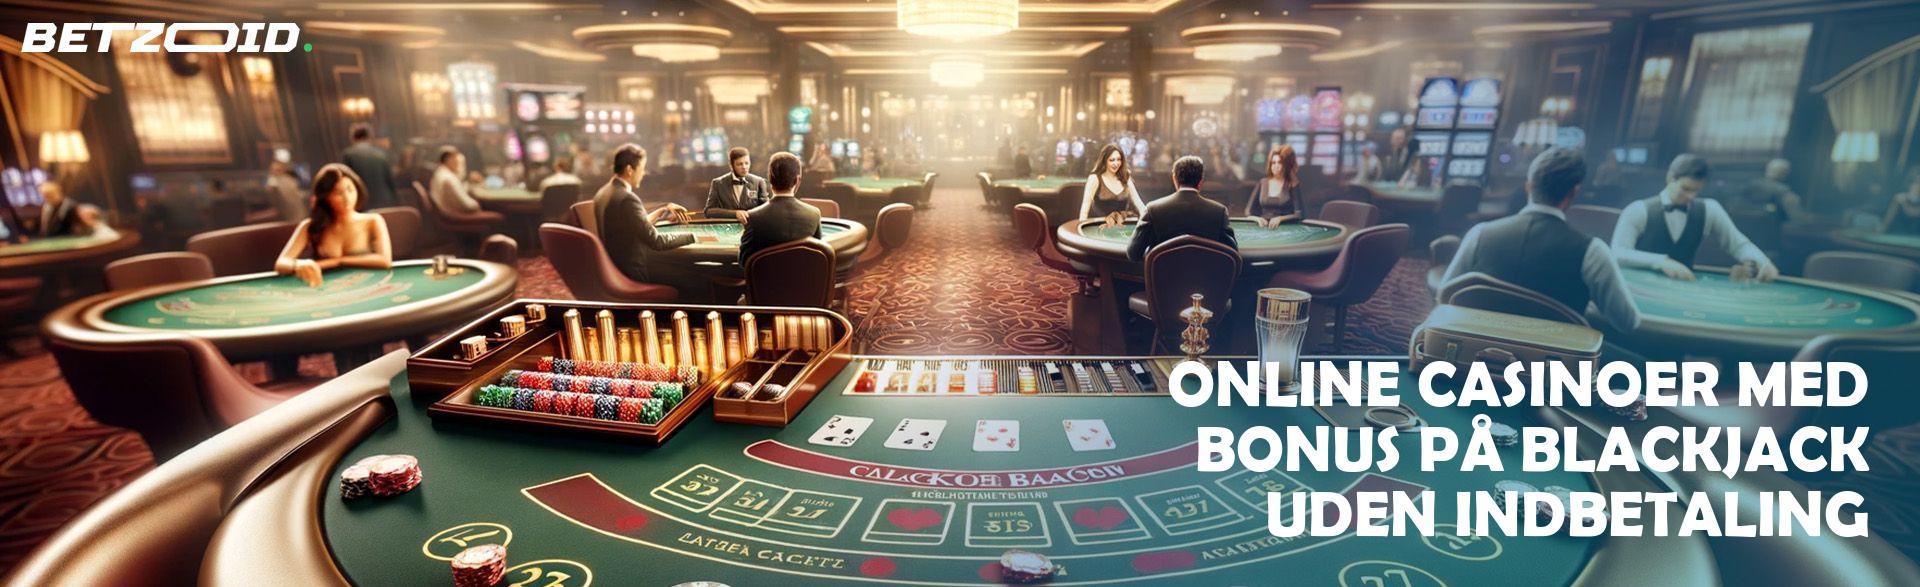 Online Casinoer med Bonus på Blackjack uden Indbetaling.